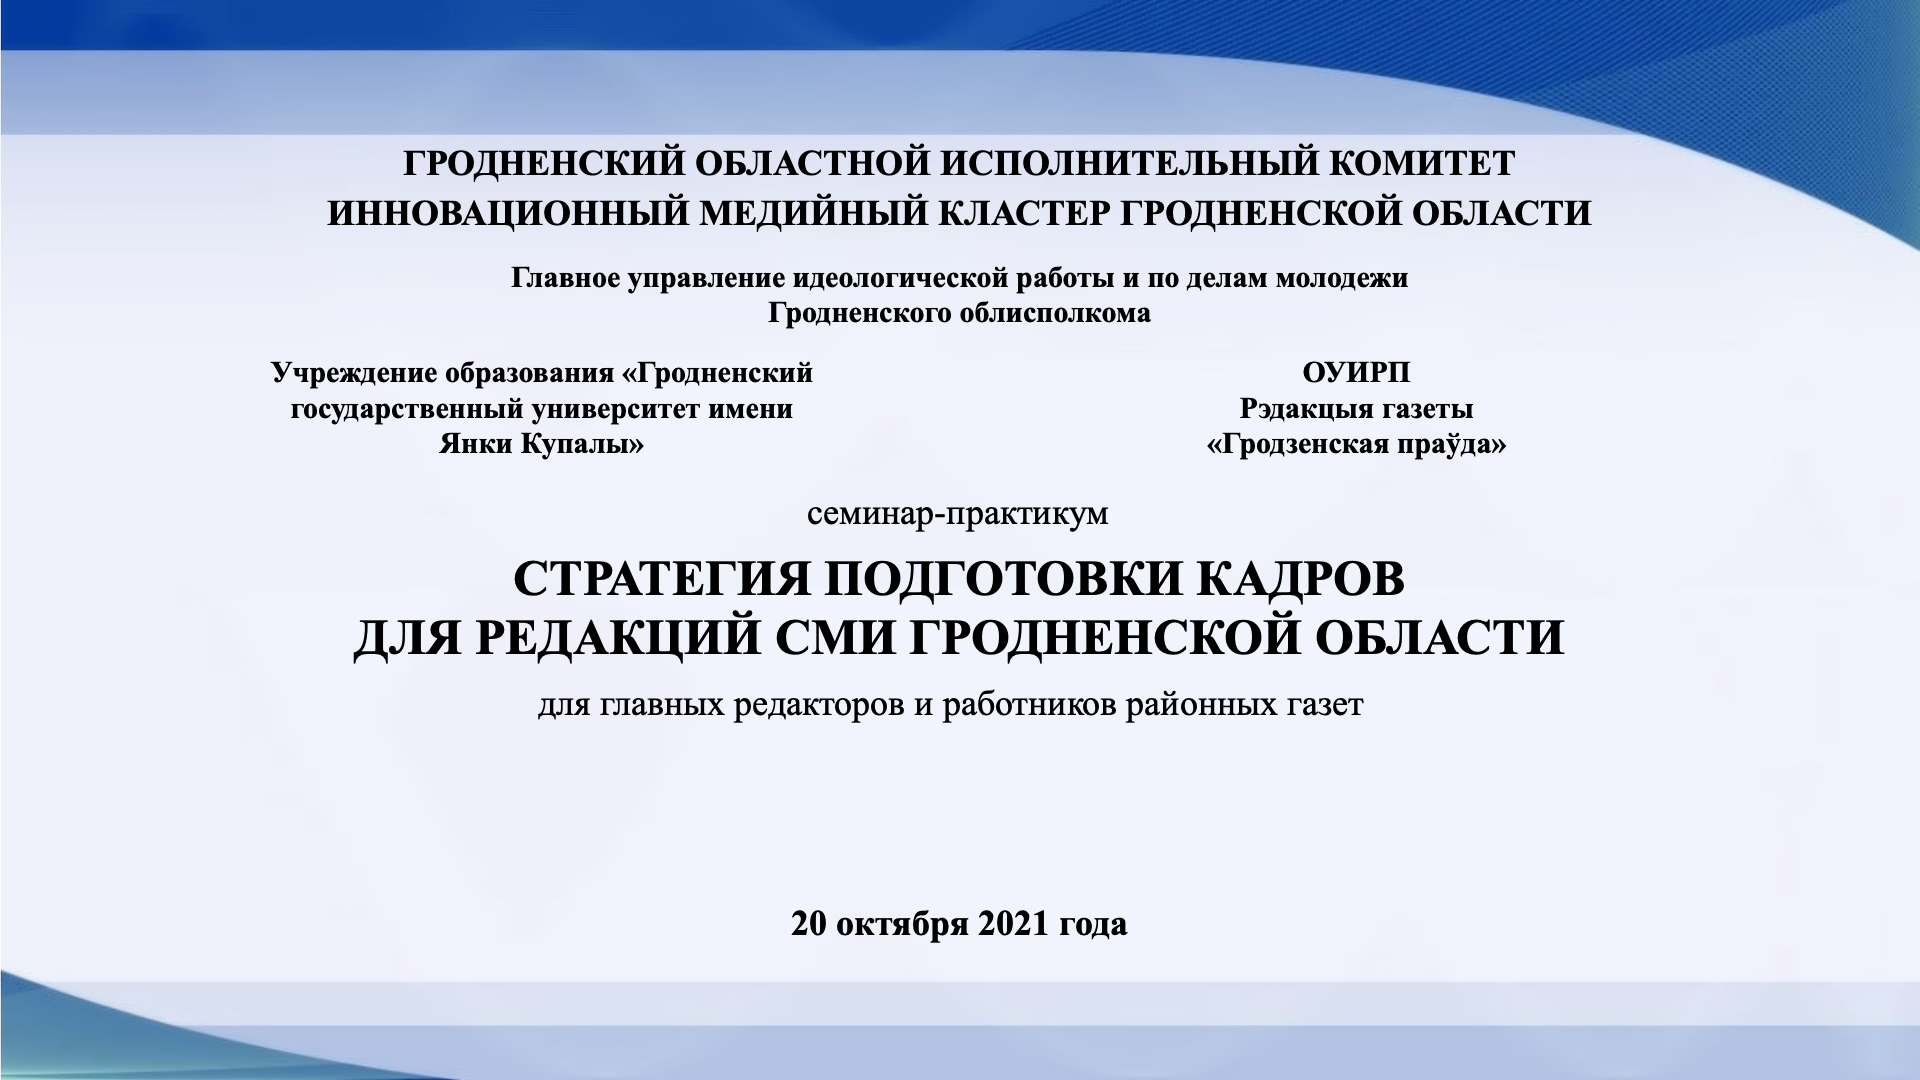 Семинар-практикум «Стратегия подготовки кадров для редакций СМИ Гродненской области» состоится в Купаловском университете